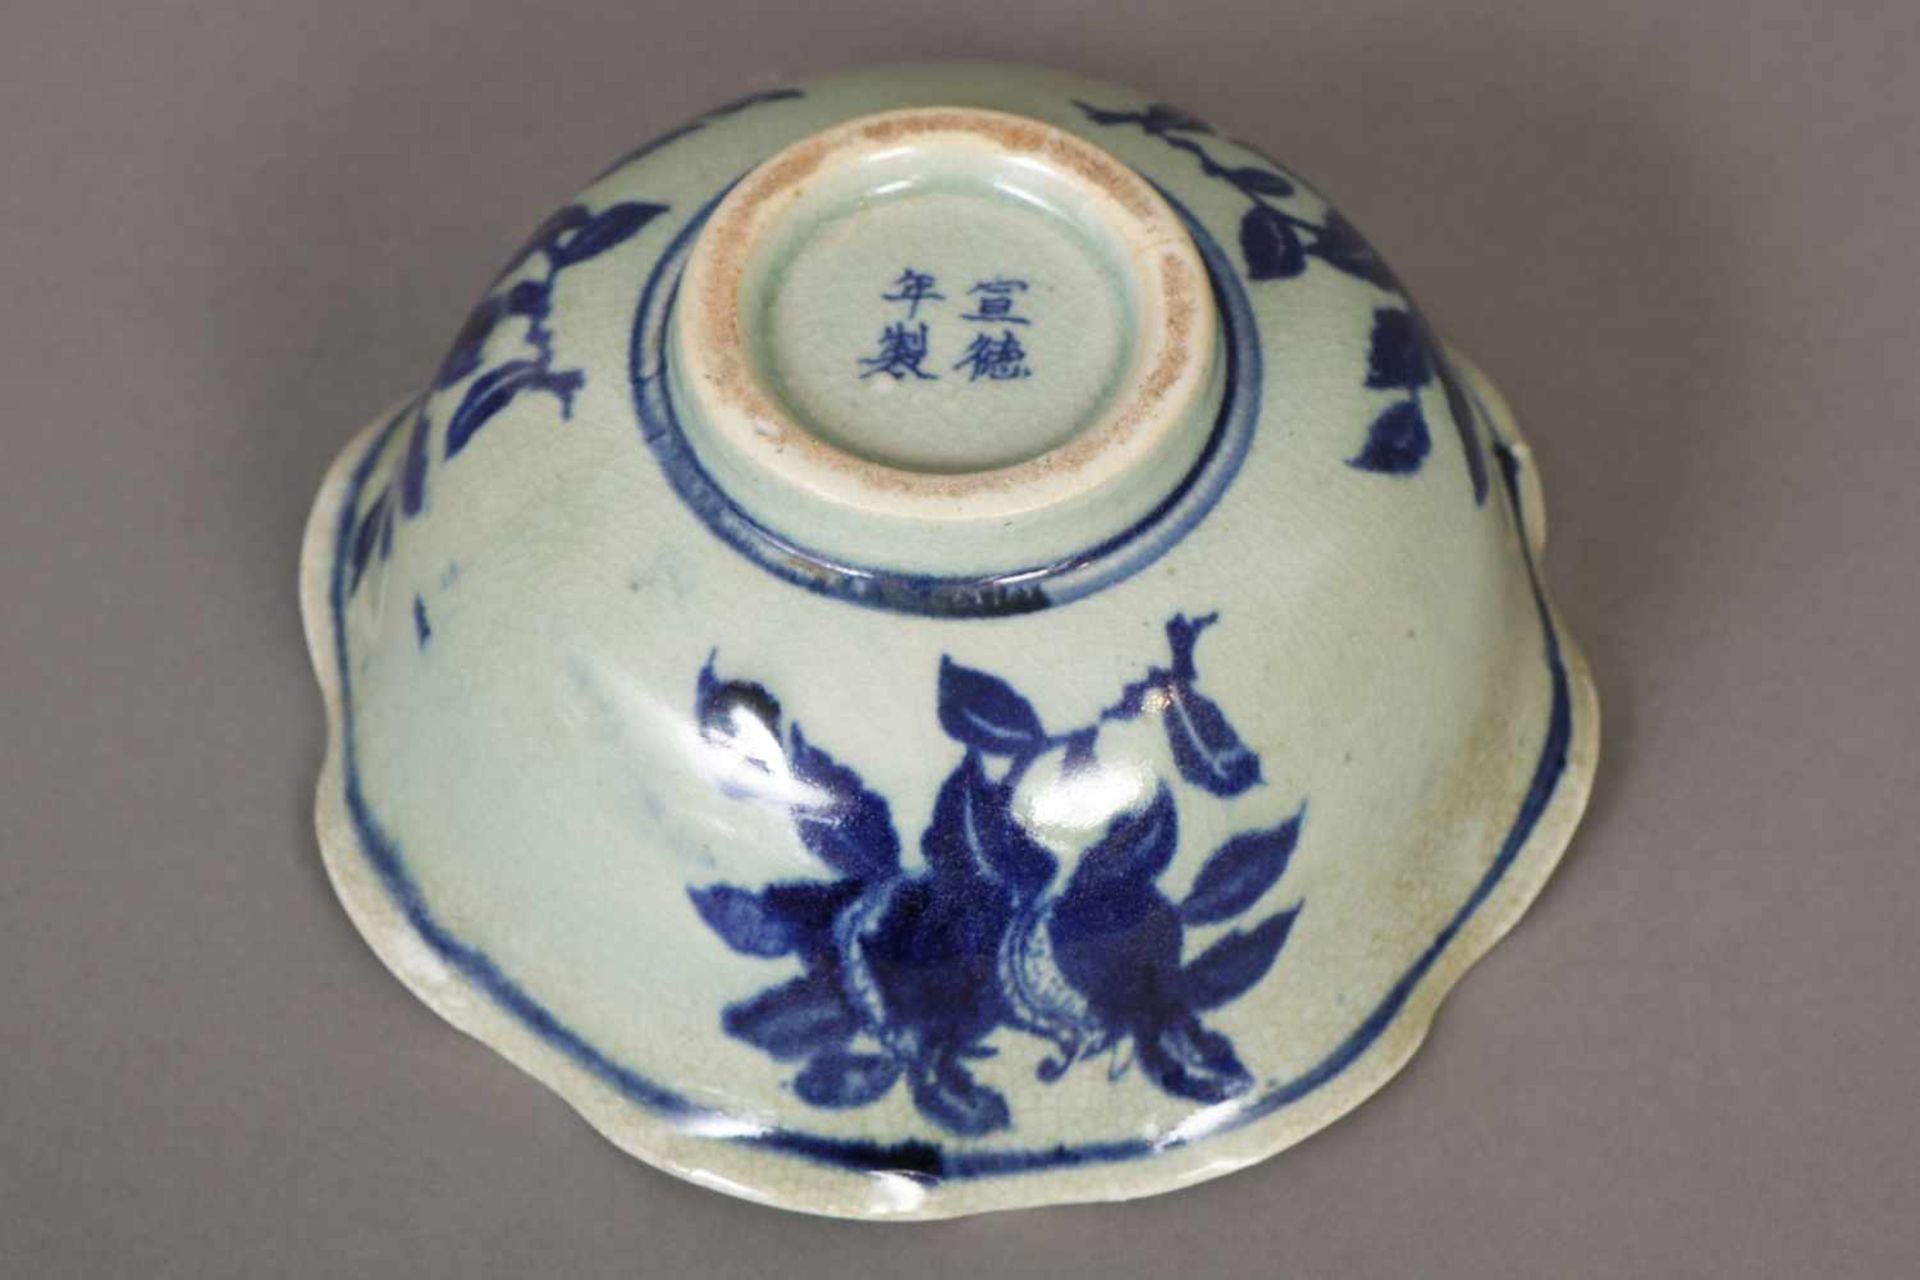 Chinesische Porzellanschale im Stile Mingtiefe Schale mit welligem Rand auf kurzem Standring, - Bild 2 aus 2